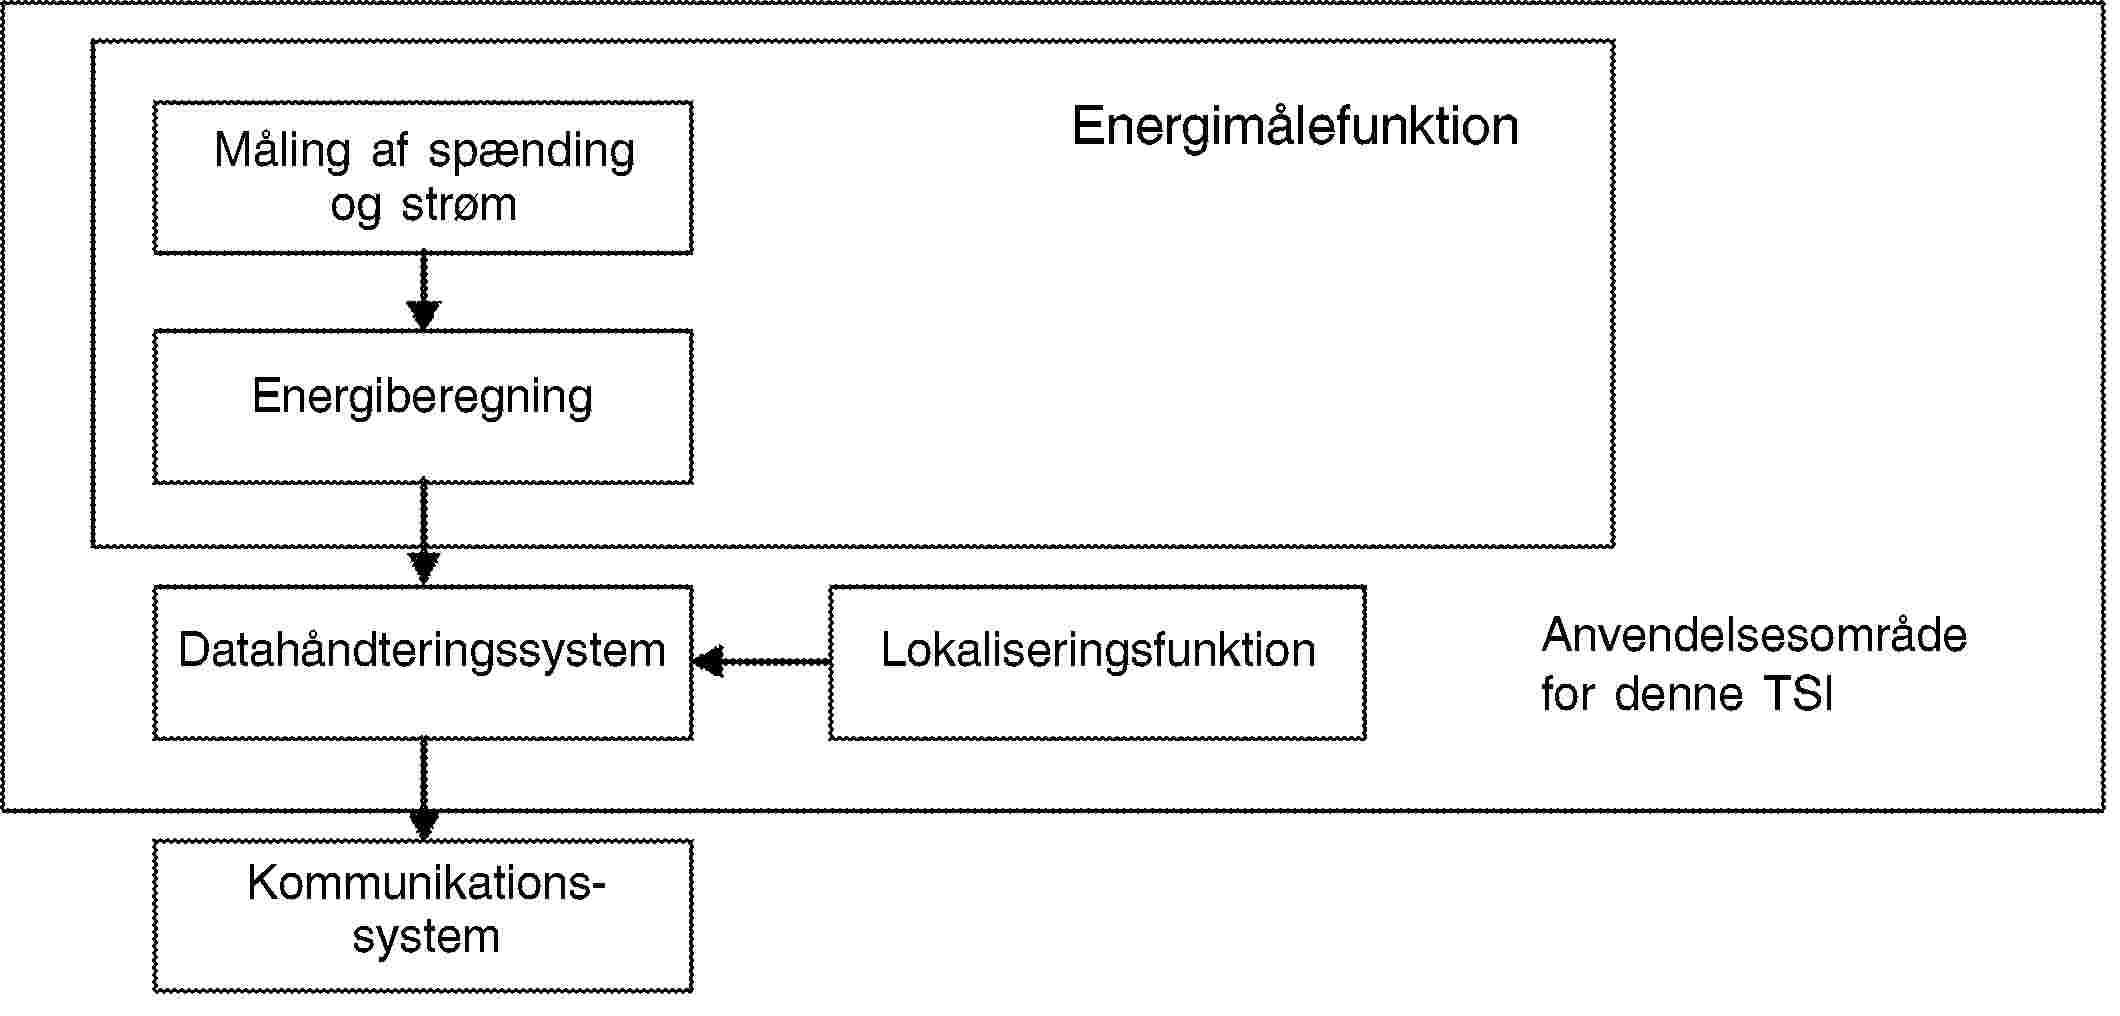 EnergimålefunktionLokaliseringsfunktionAnvendelsesområde for denne TSIMåling af spænding og strømEnergiberegningDatahåndteringssystemKommunikationssystem